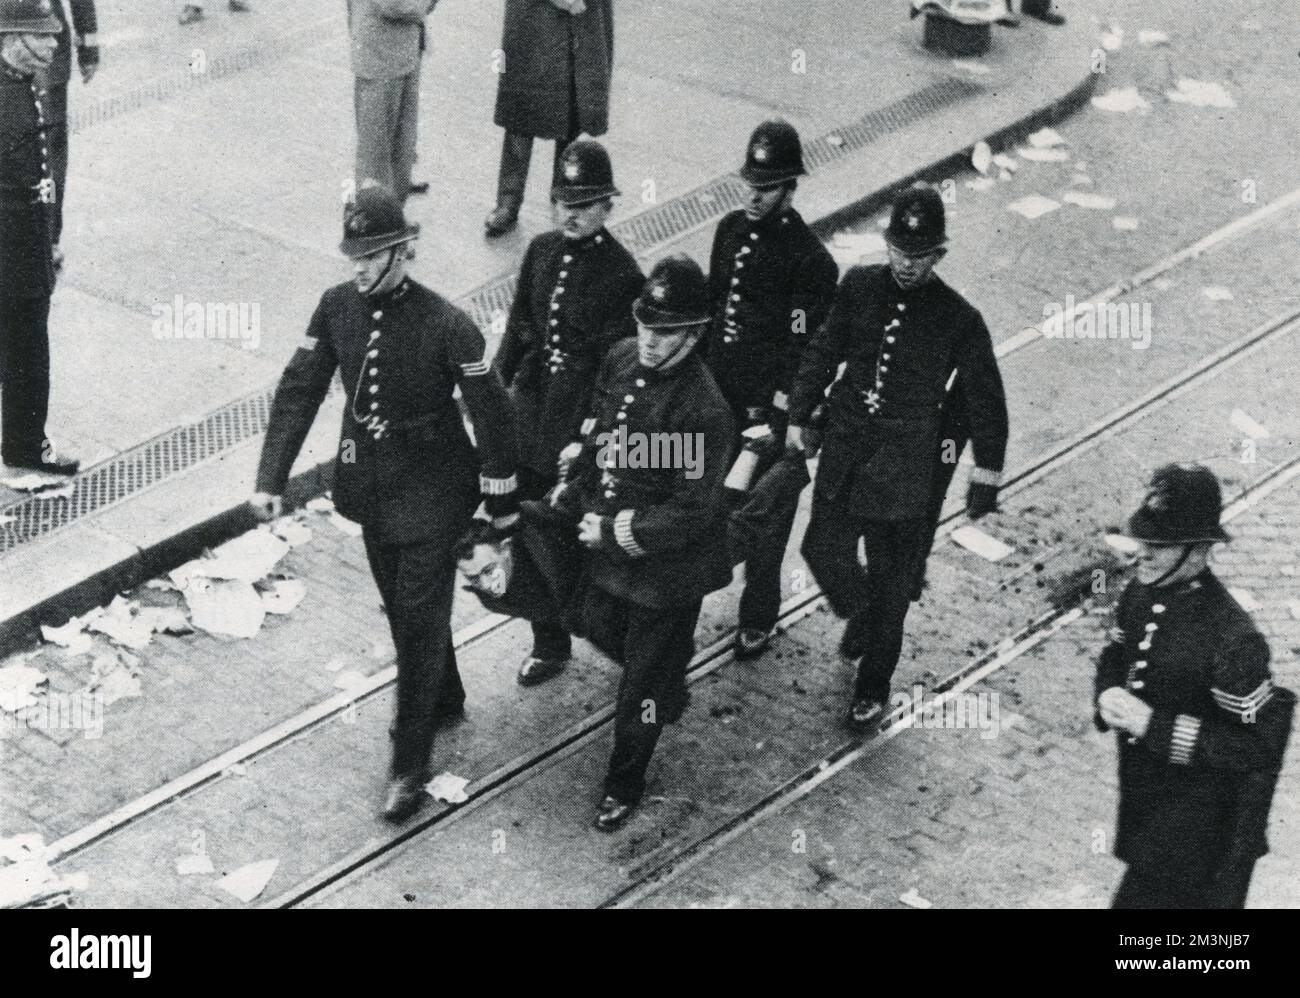 Un dimostratore è portato via da cinque poliziotti, uno dei 84 arresti effettuati durante la manifestazione antifascista nell'East End di Londra, in opposizione alla marcia proposta da Sir Oswald Mosley e dall'Unione britannica dei fascisti. Data: 4 ottobre 1936 Foto Stock